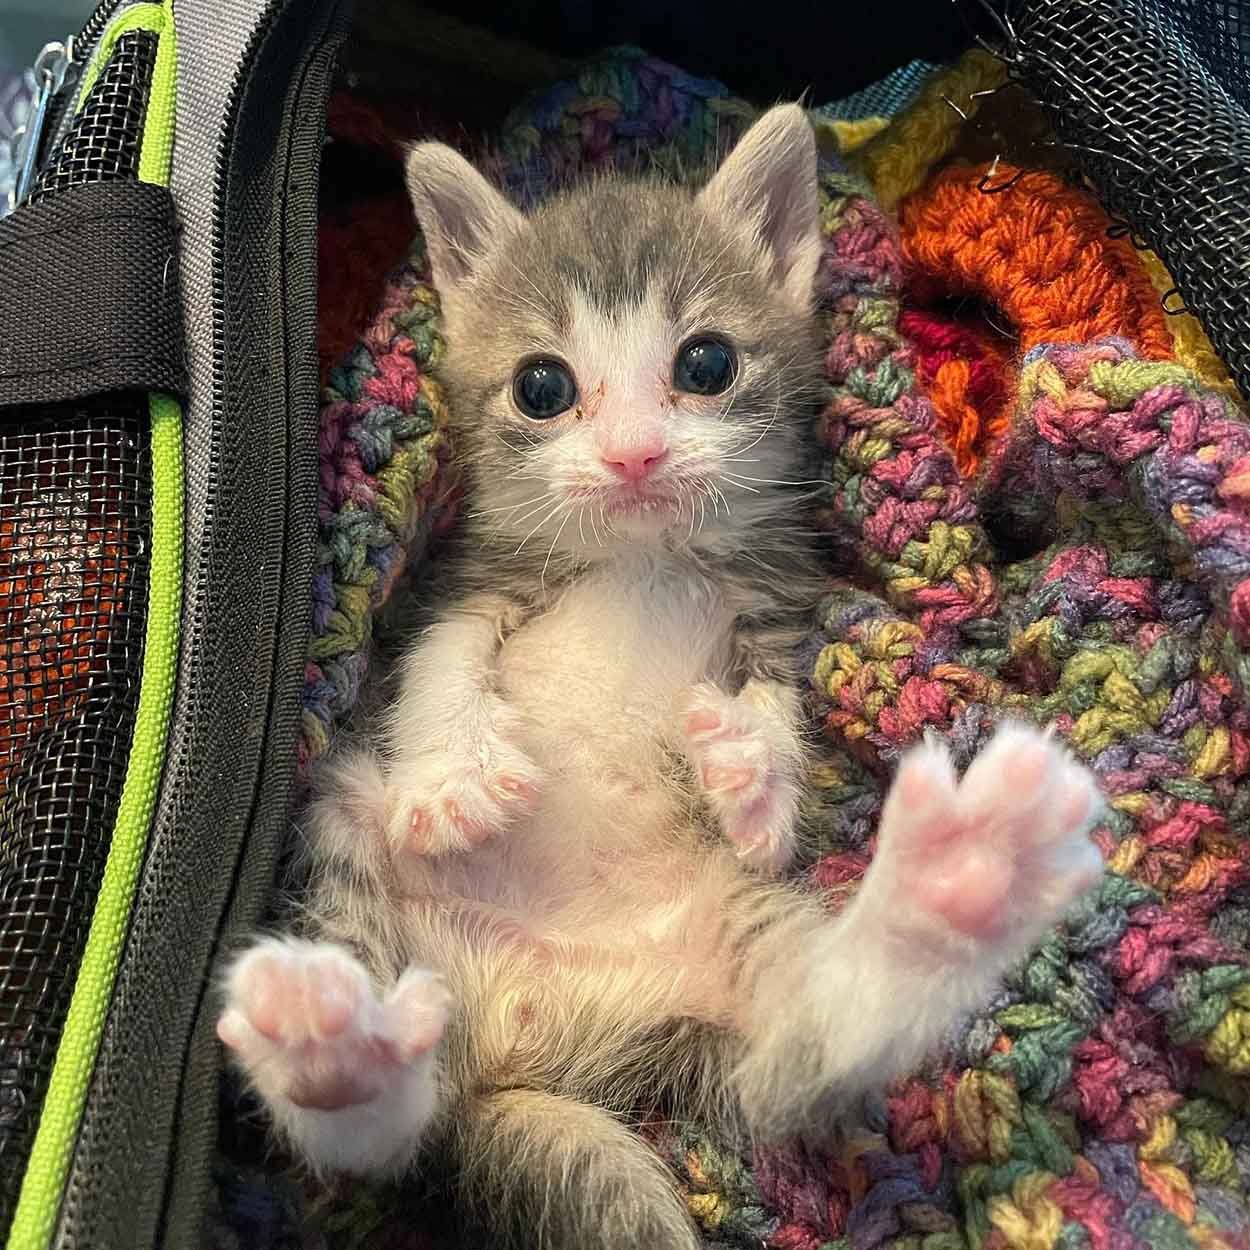 Adorable gatito del tamaño de la palma de la mano